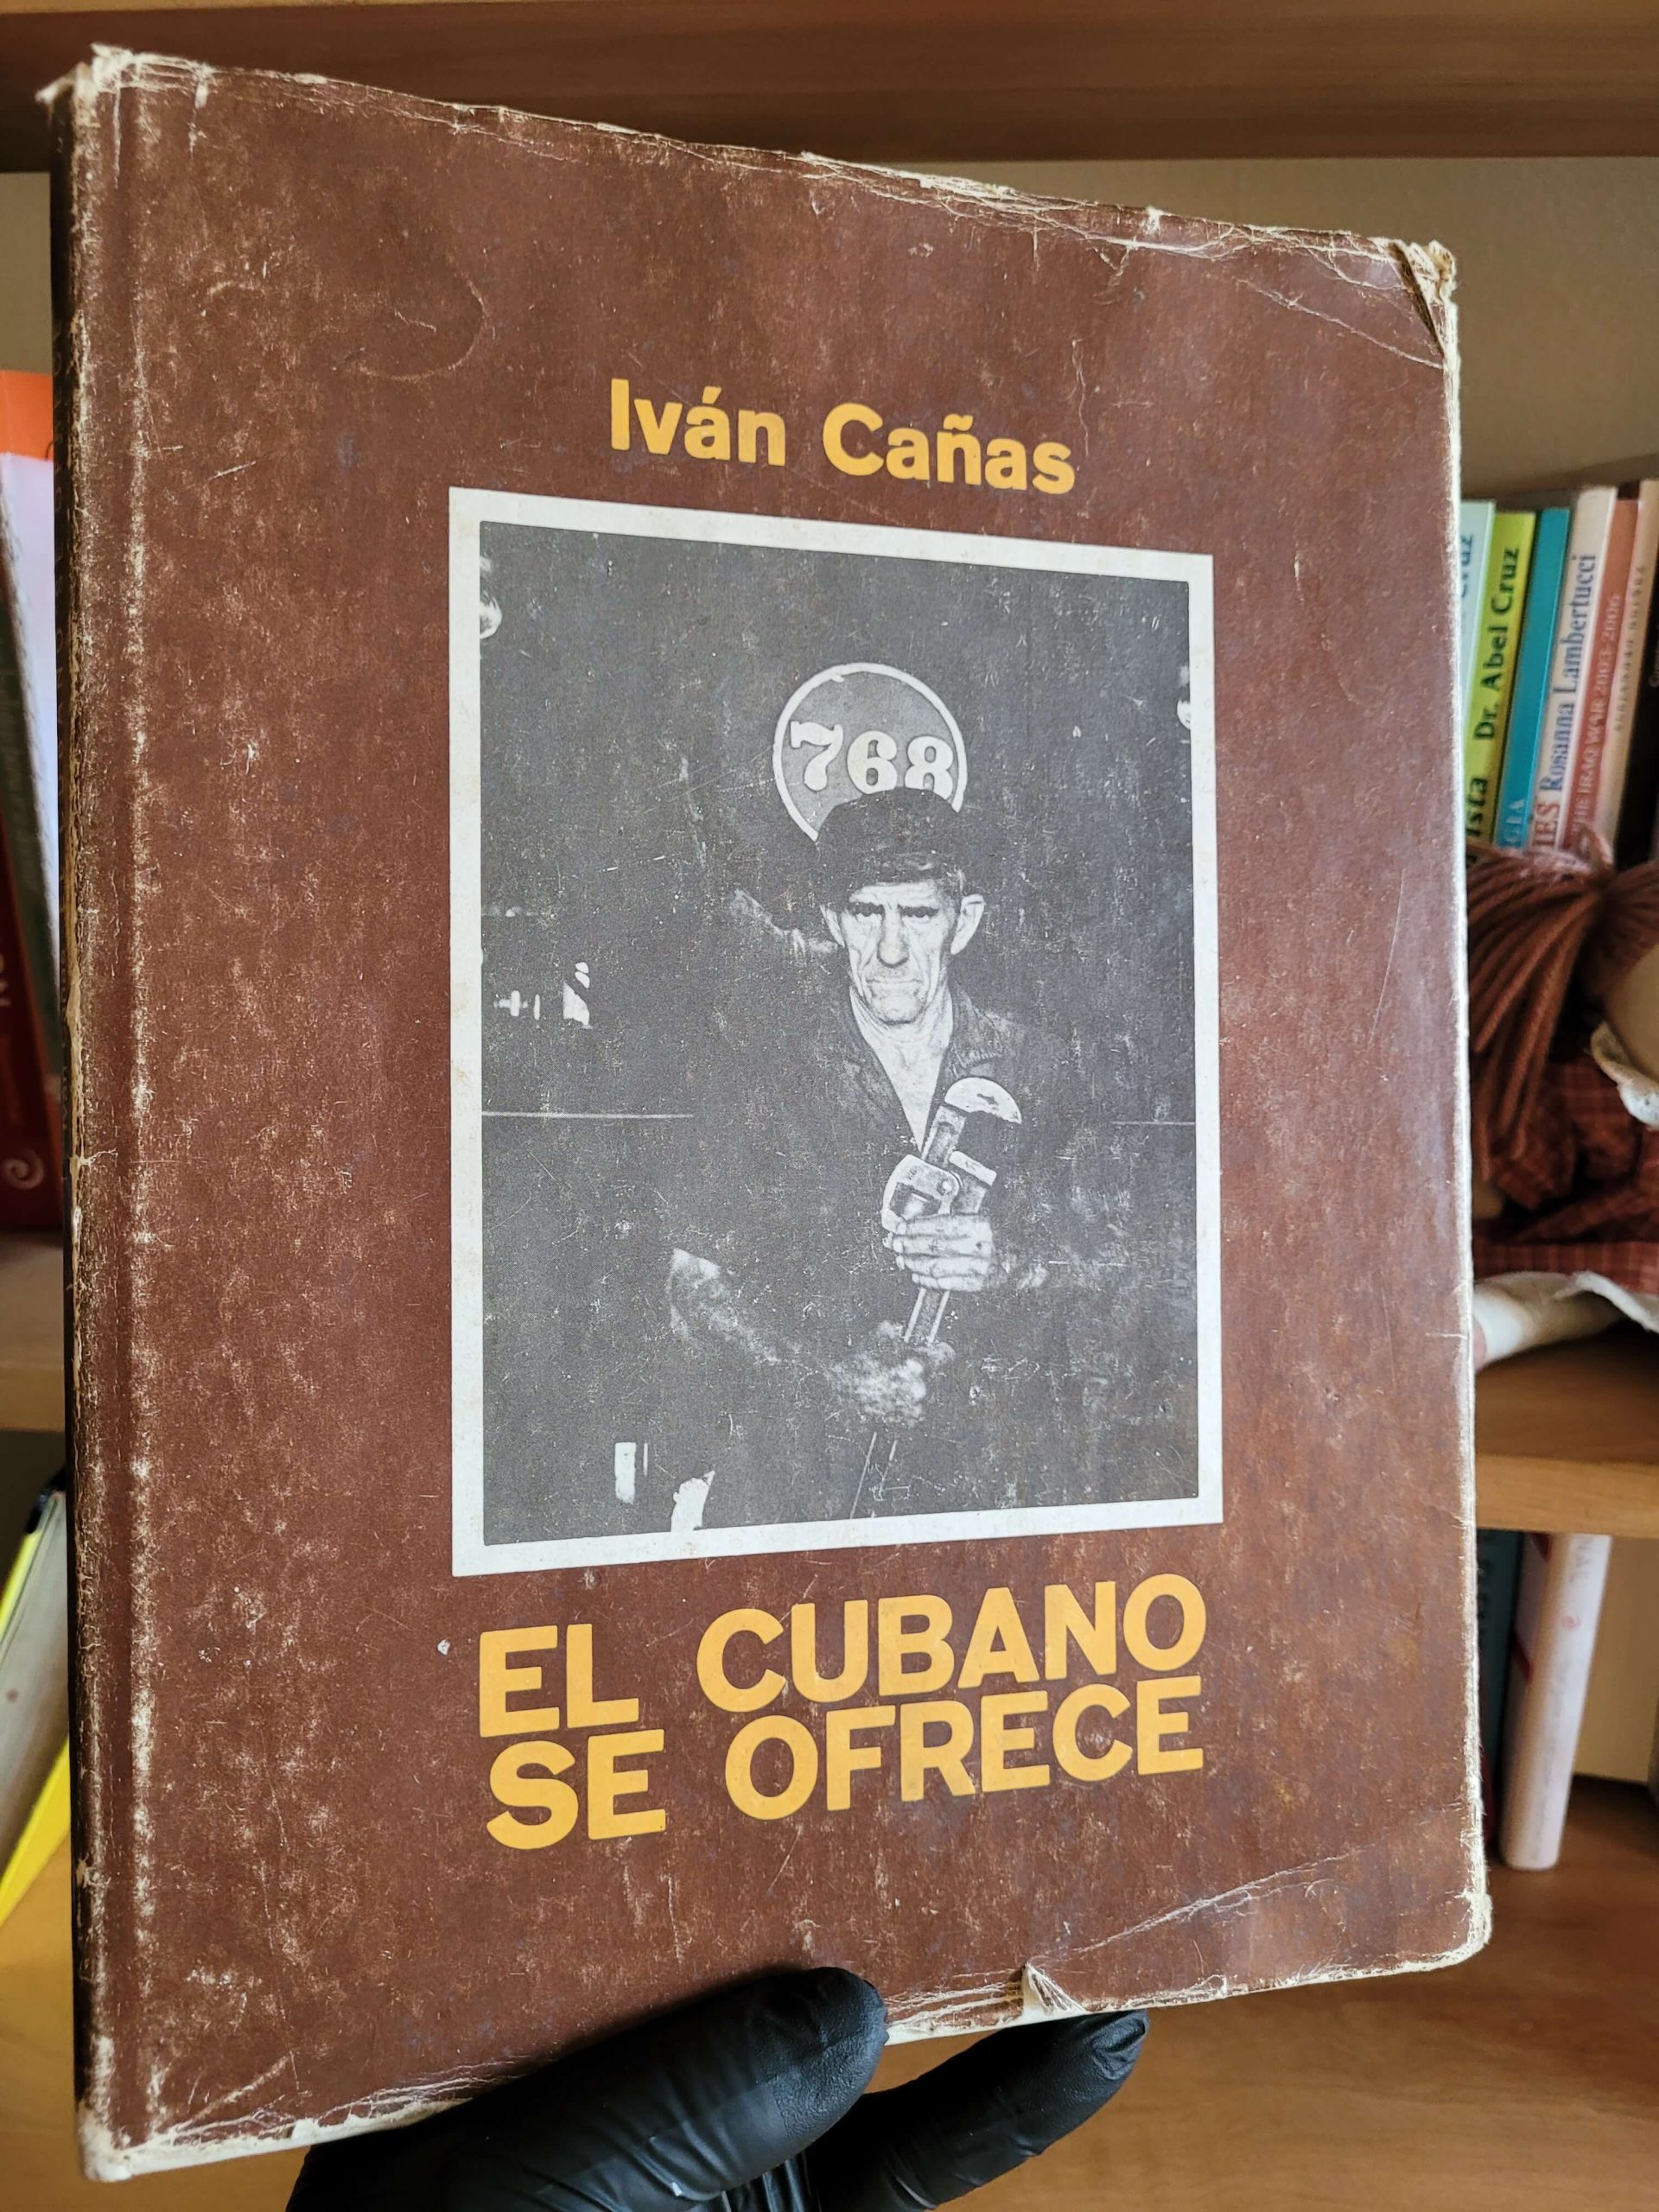 (1982) El Cubano se ofrece (Ivan Cañas)